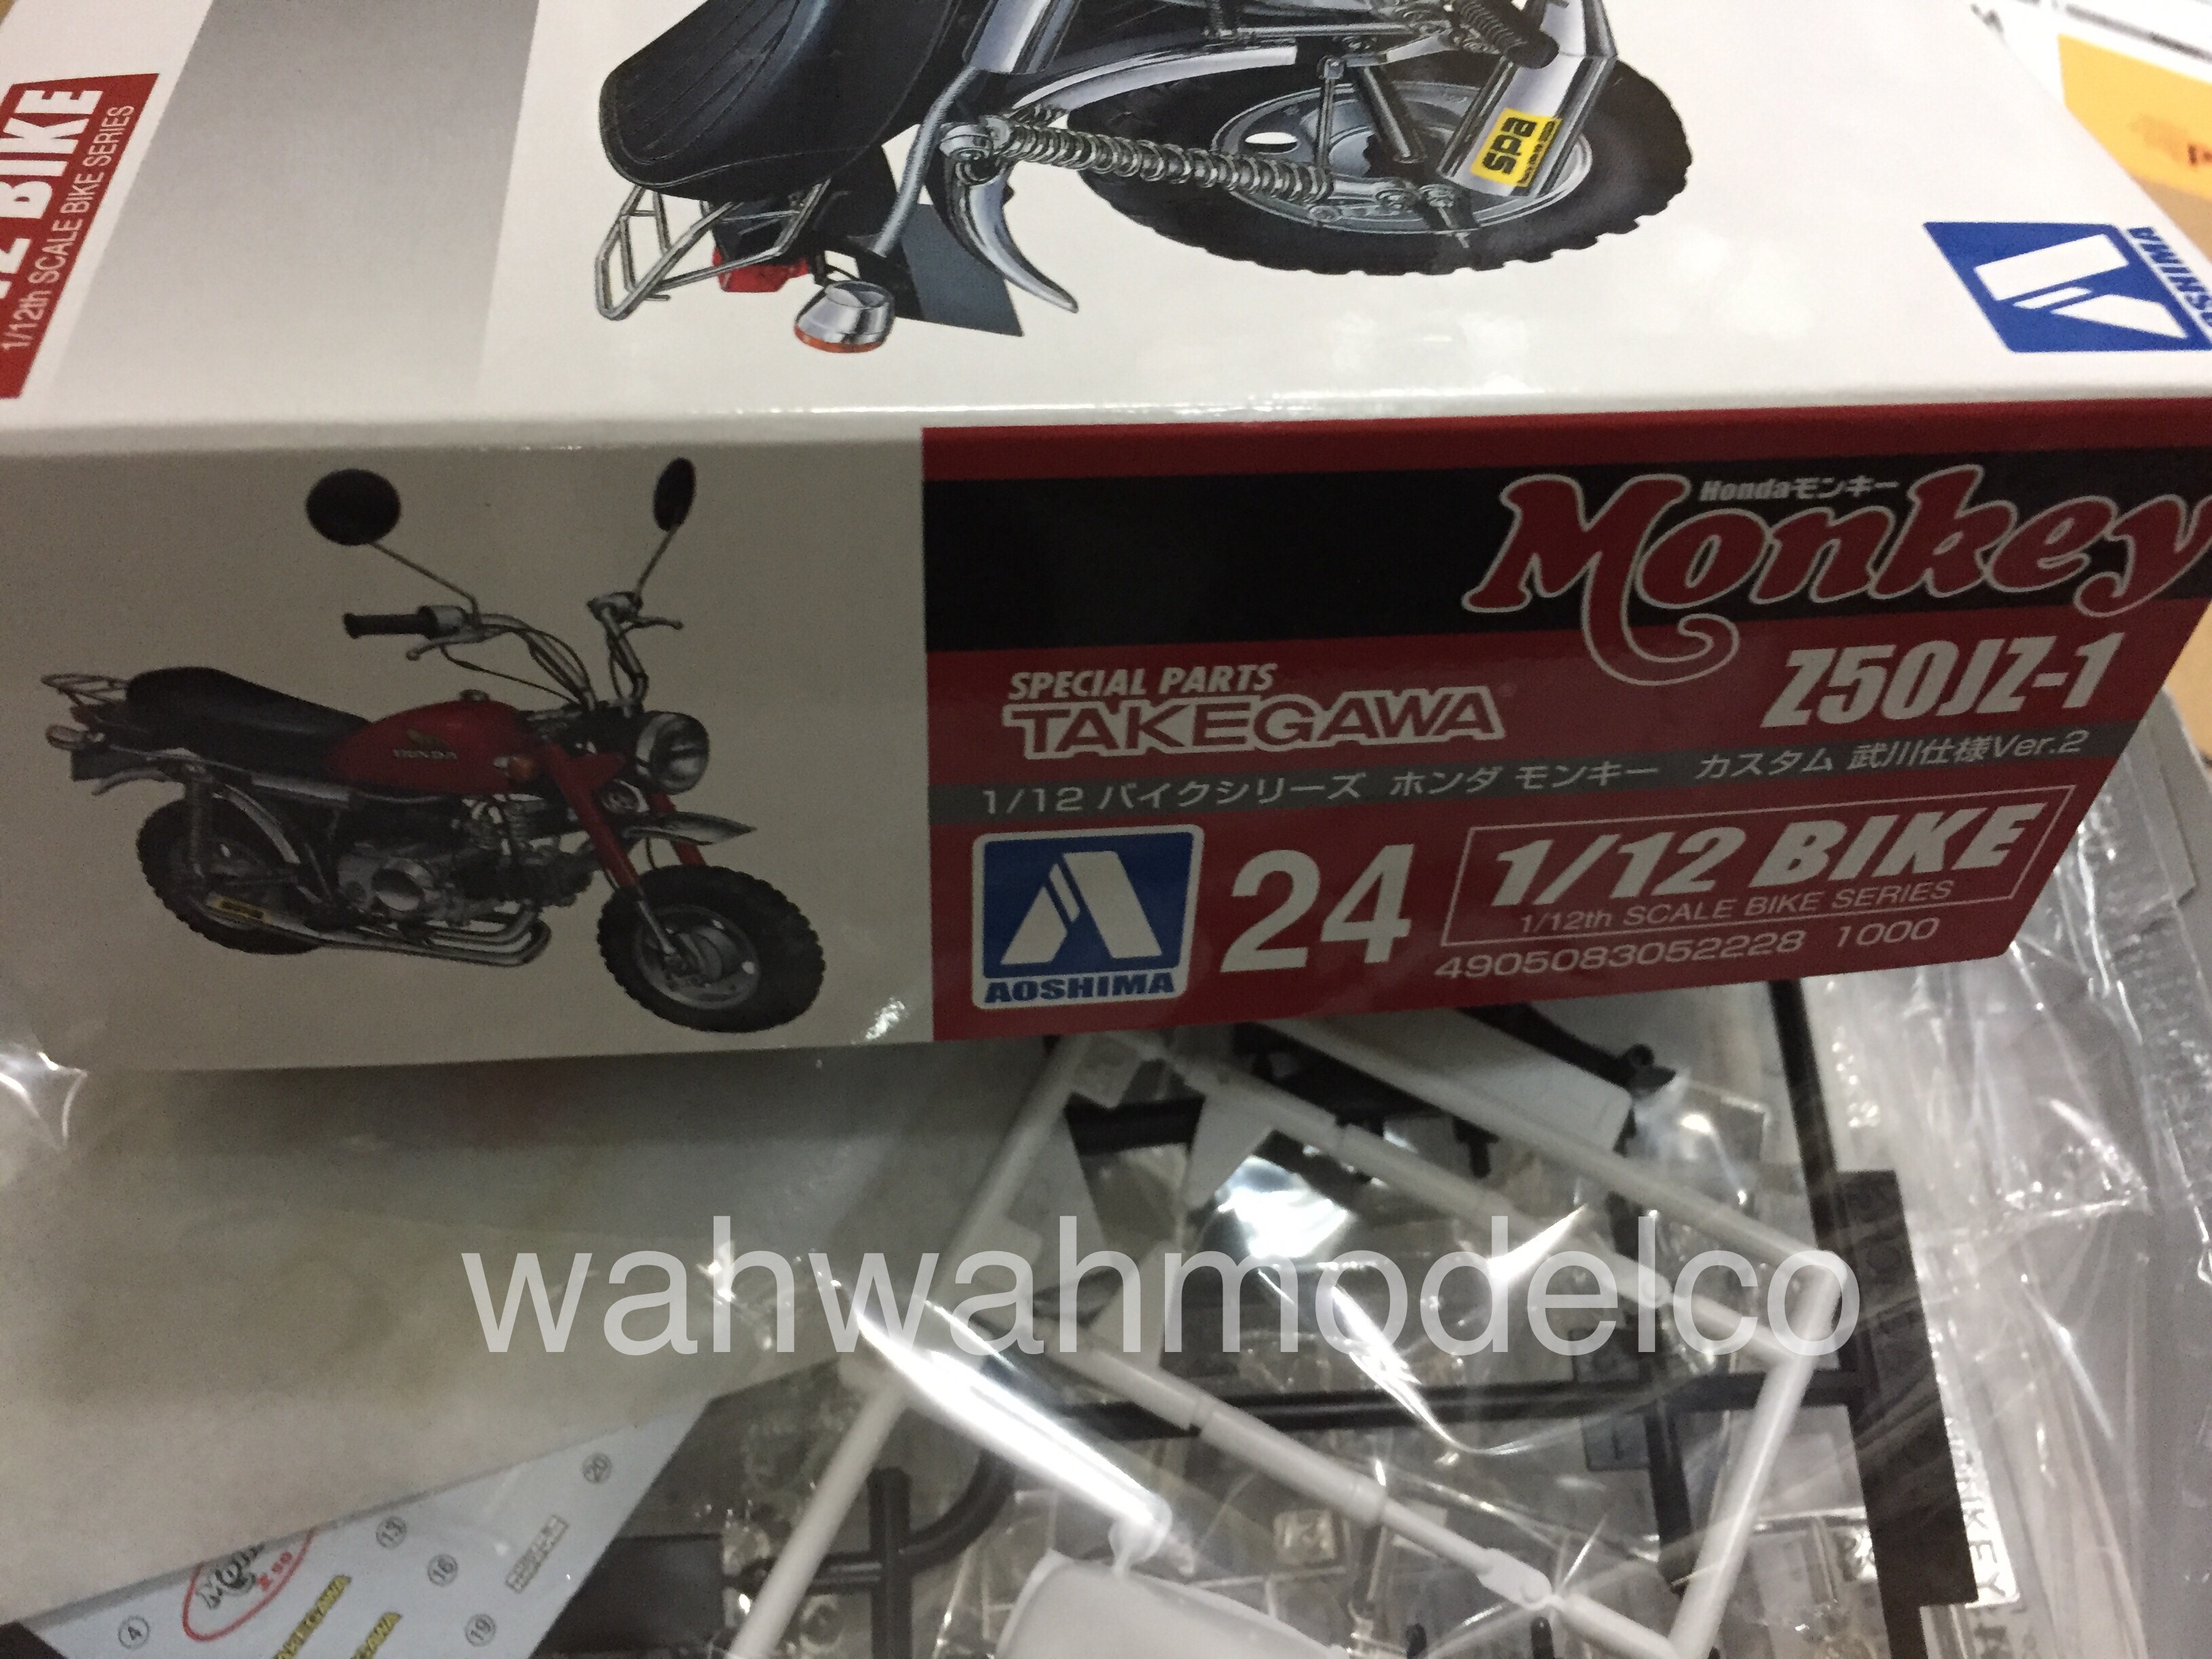 Aoshima 52204 Takegawa 78 Honda Monkey Z50JZ-1 Motorcycle Plastic Model Kit 1/12 